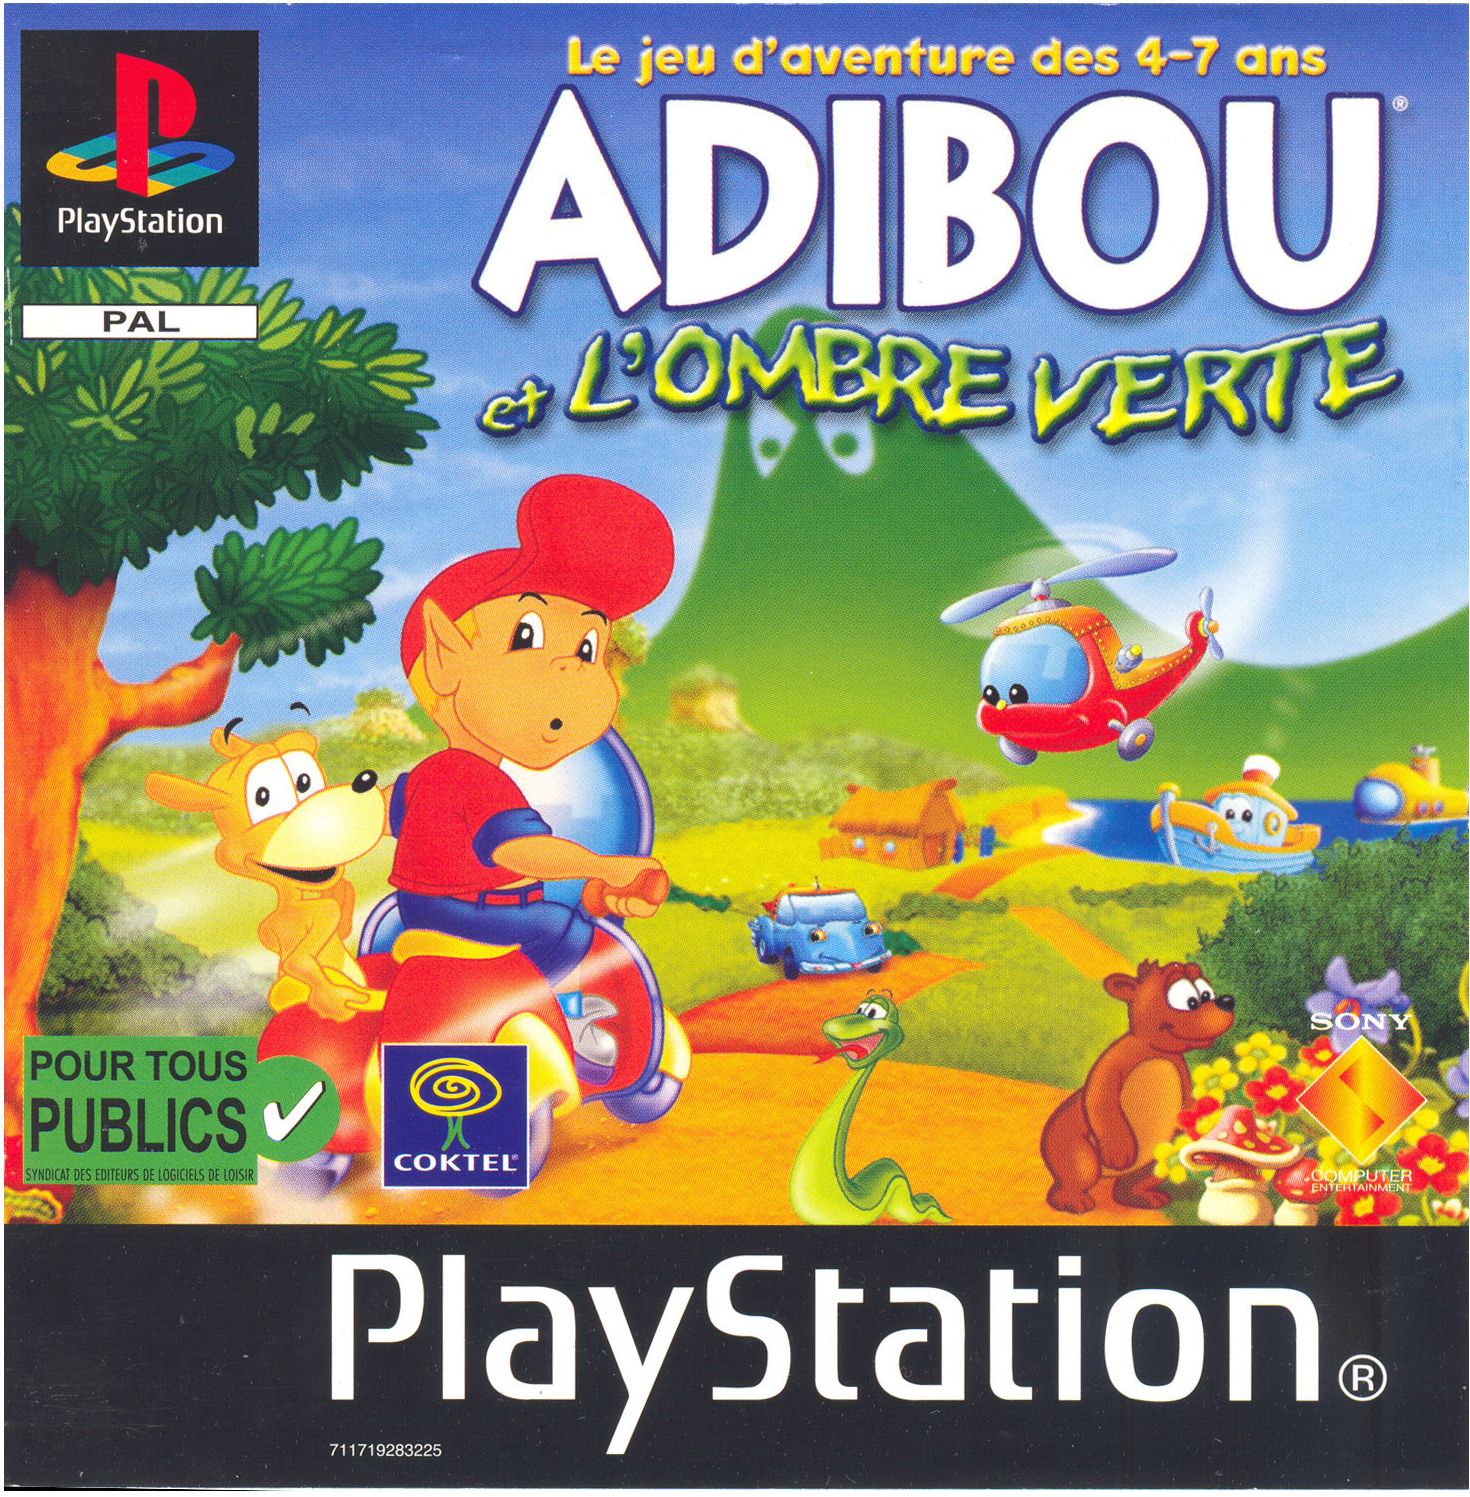 Adibou et L'Ombre verte PSX cover